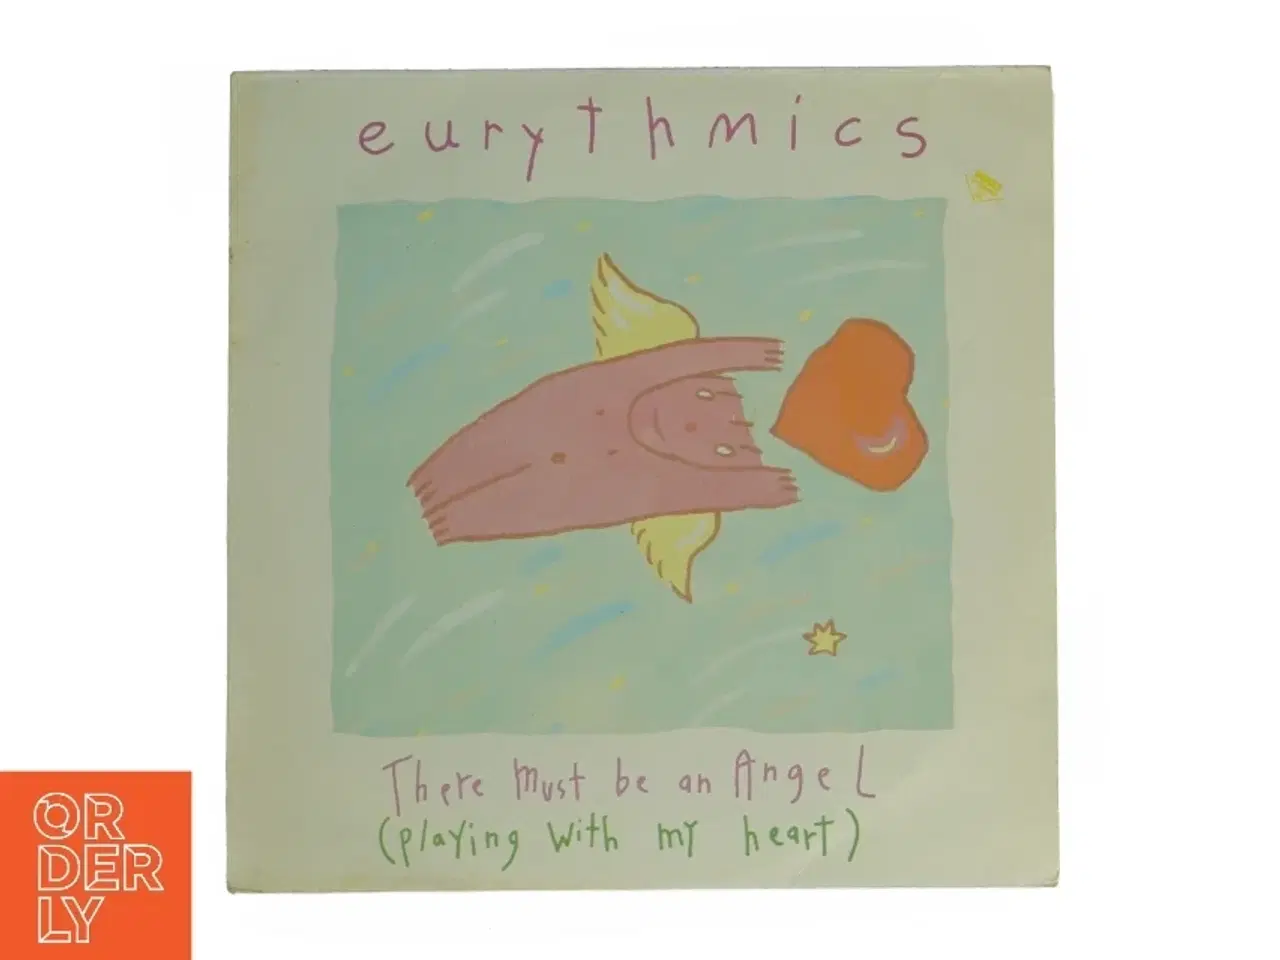 Billede 1 - Eurythmics EP fra RCA (str. 31 x 31 cm)